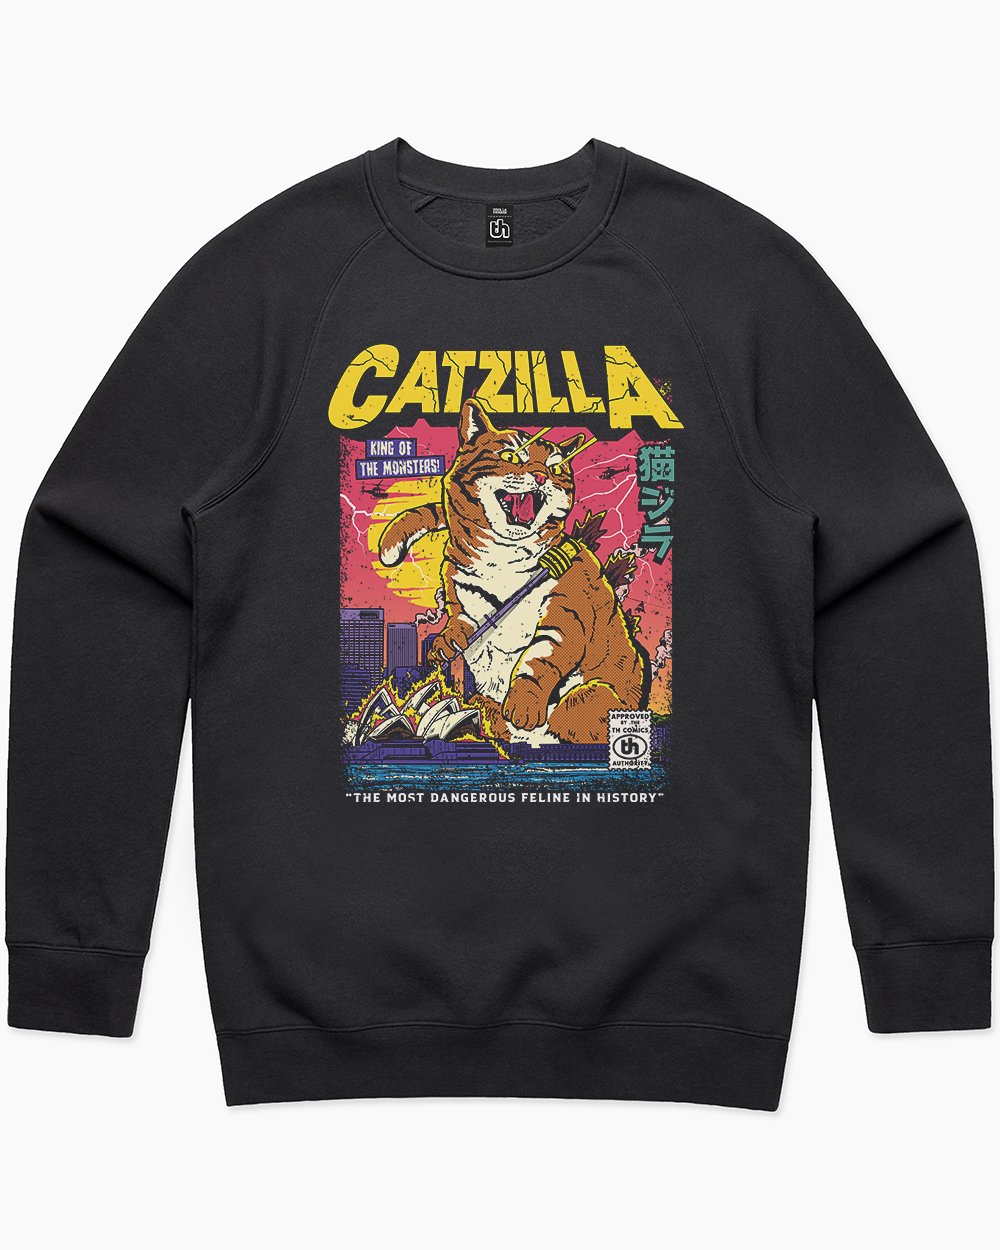 Catzilla Retro Titan Sweater Europe Online #colour_black